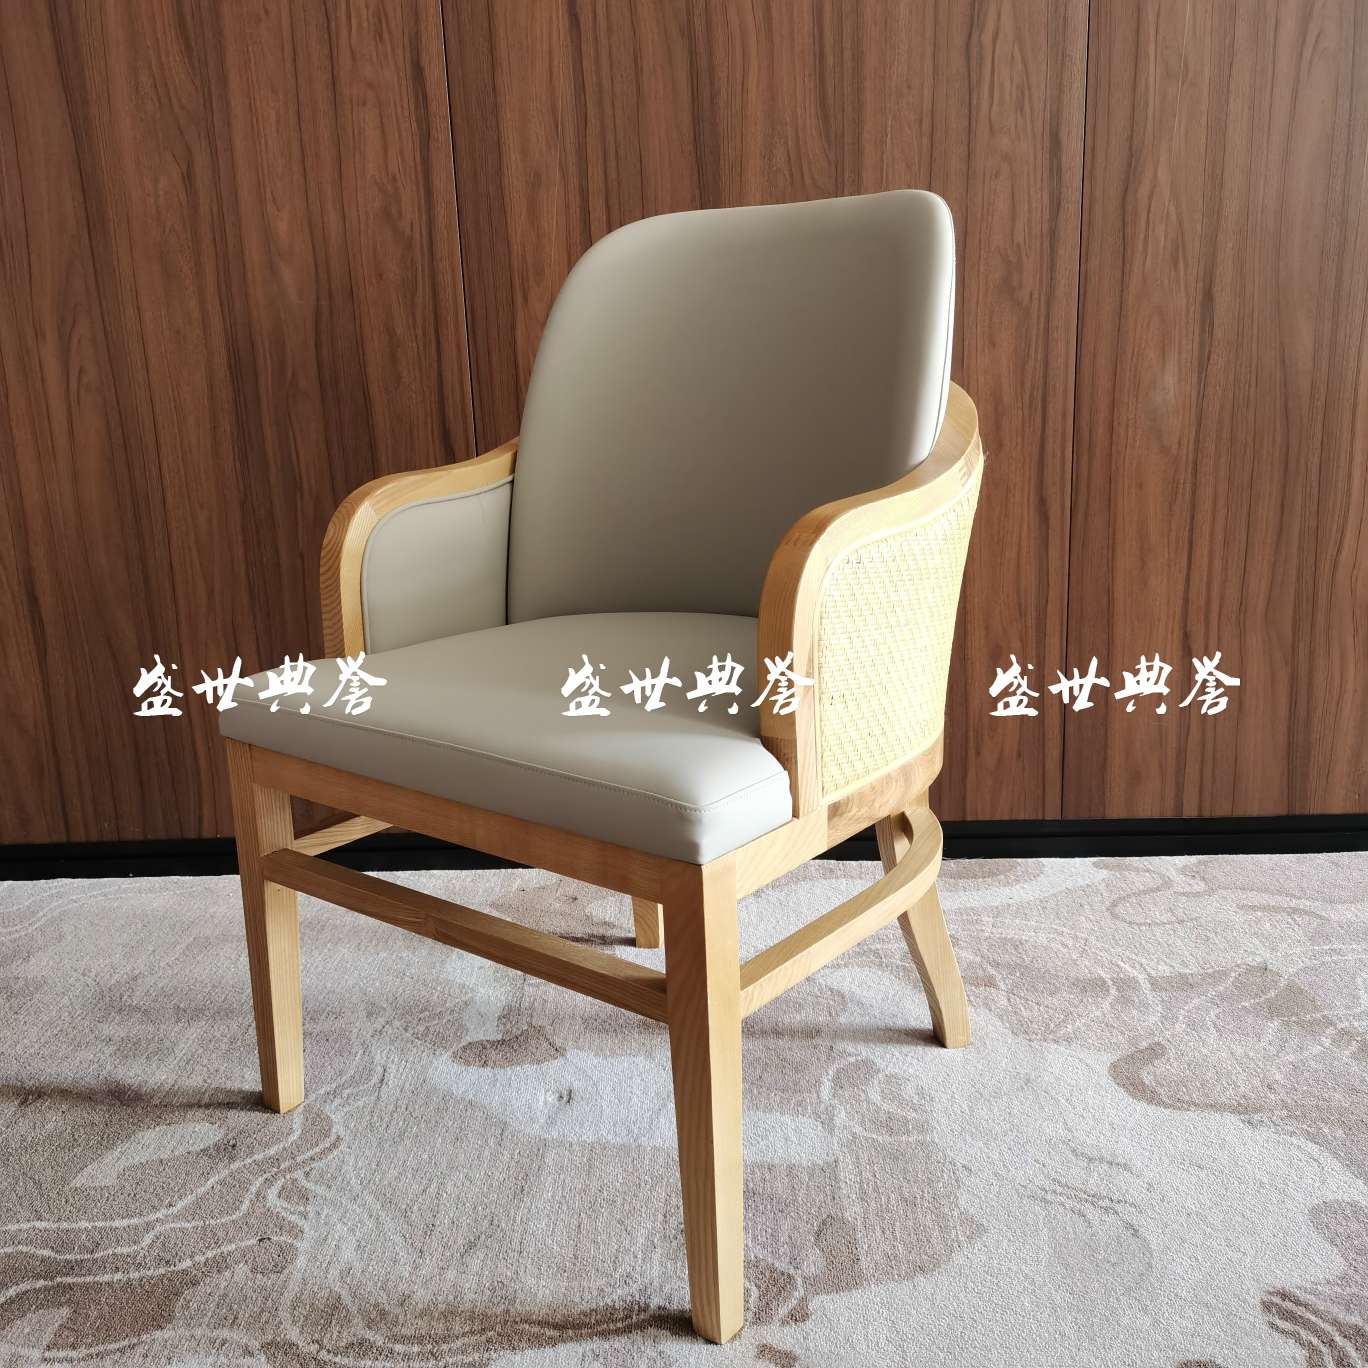 上海星级酒店实木餐桌椅国际大饭店包厢实木藤编椅子白蜡木扶手藤椅产品图